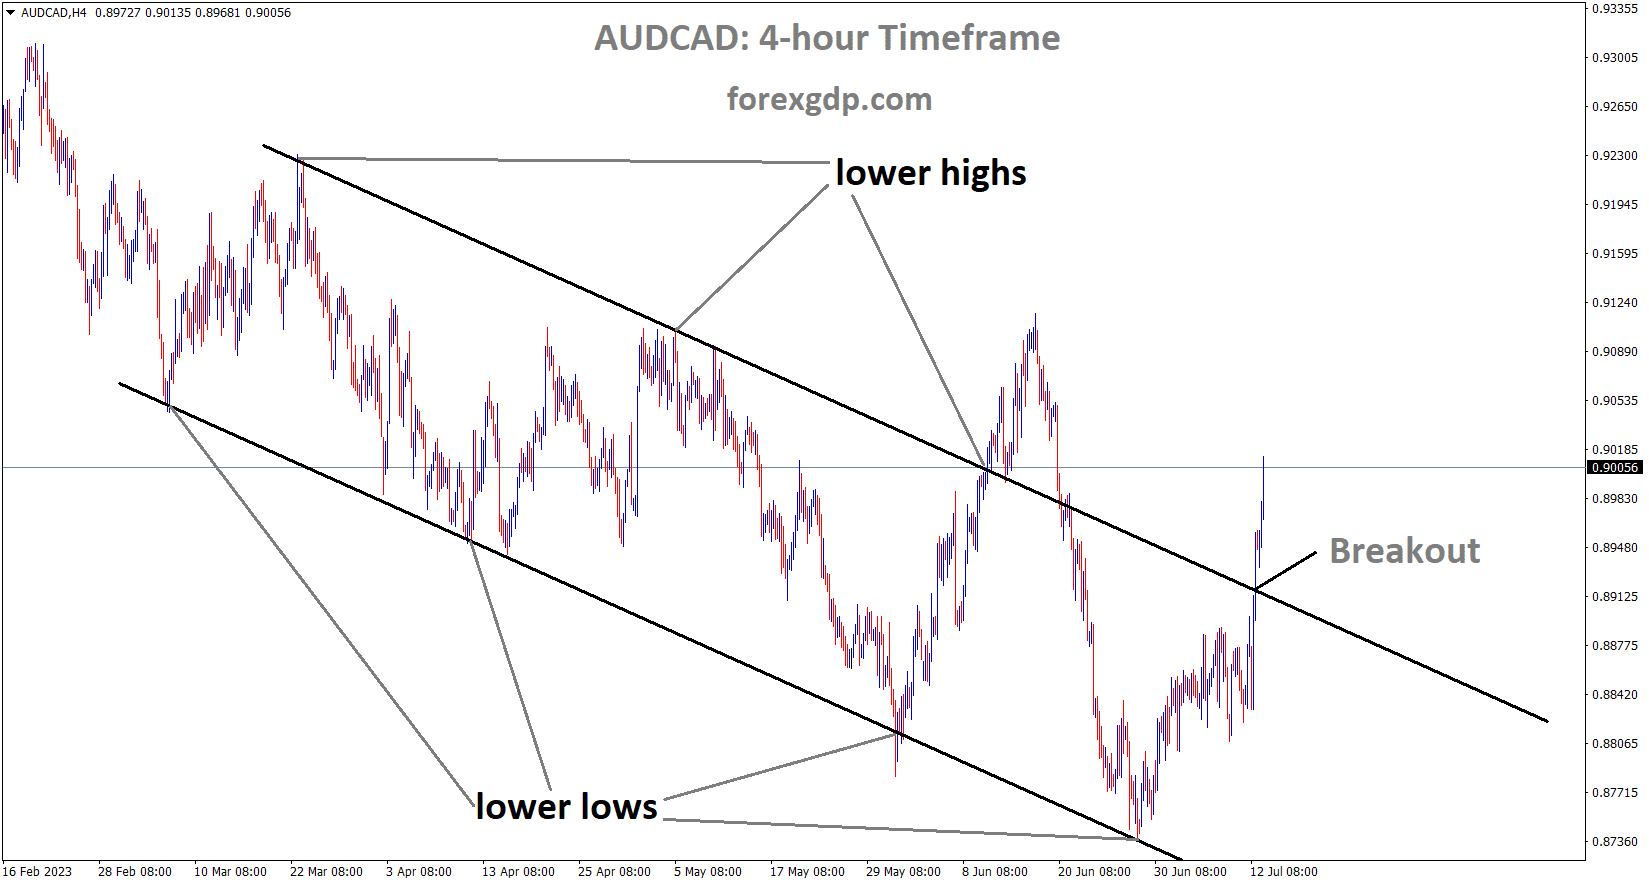 AUDCAD has broken the Descending channel in upside 1